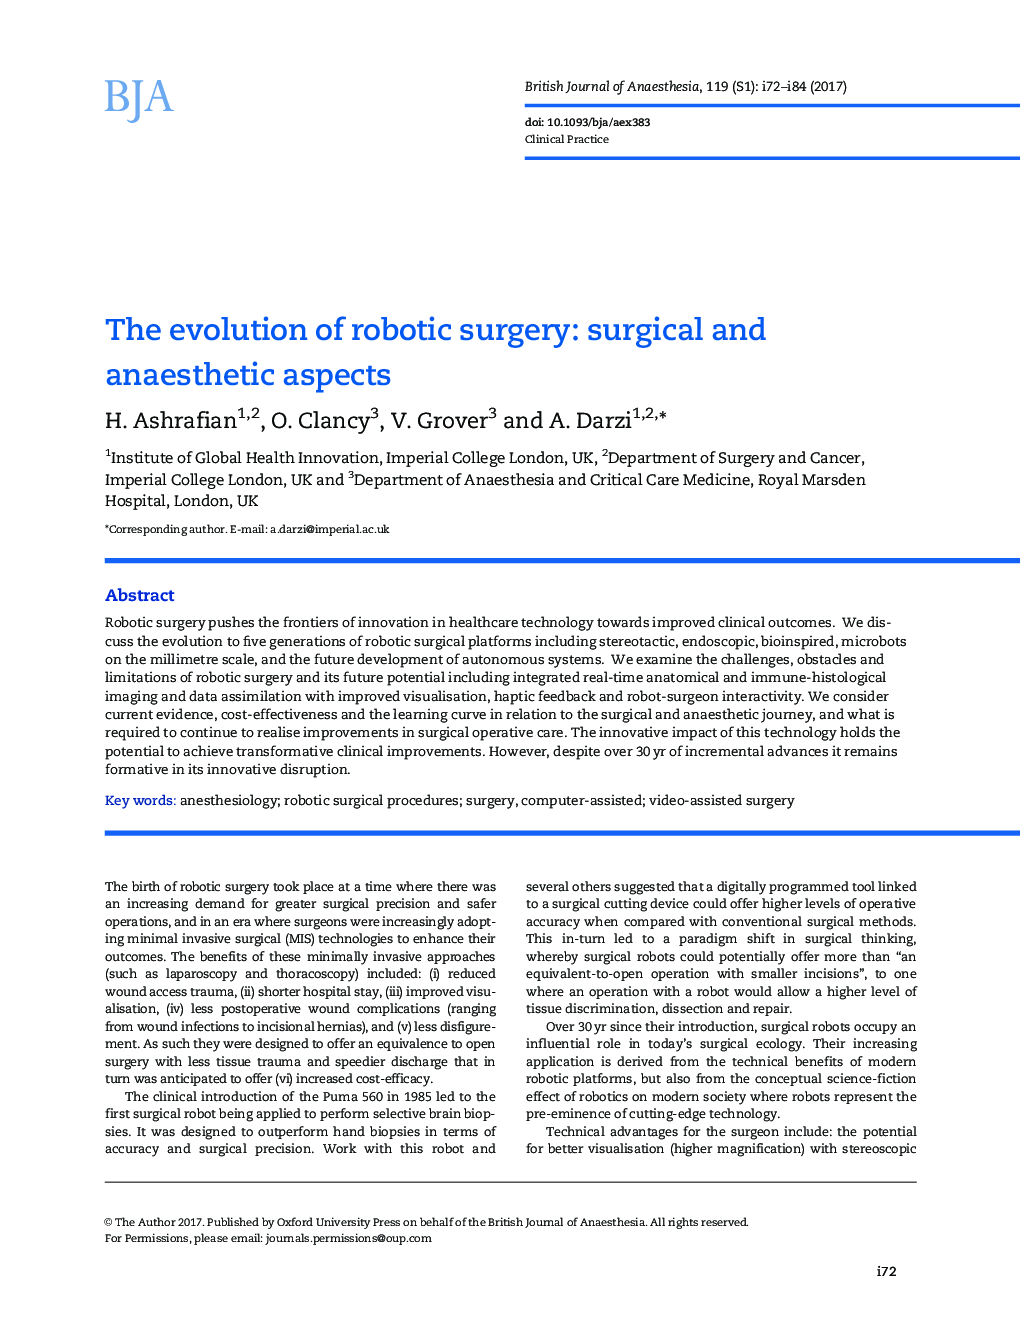 تکامل جراحی روبوتیک: جنبه های جراحی و بیهوشی 